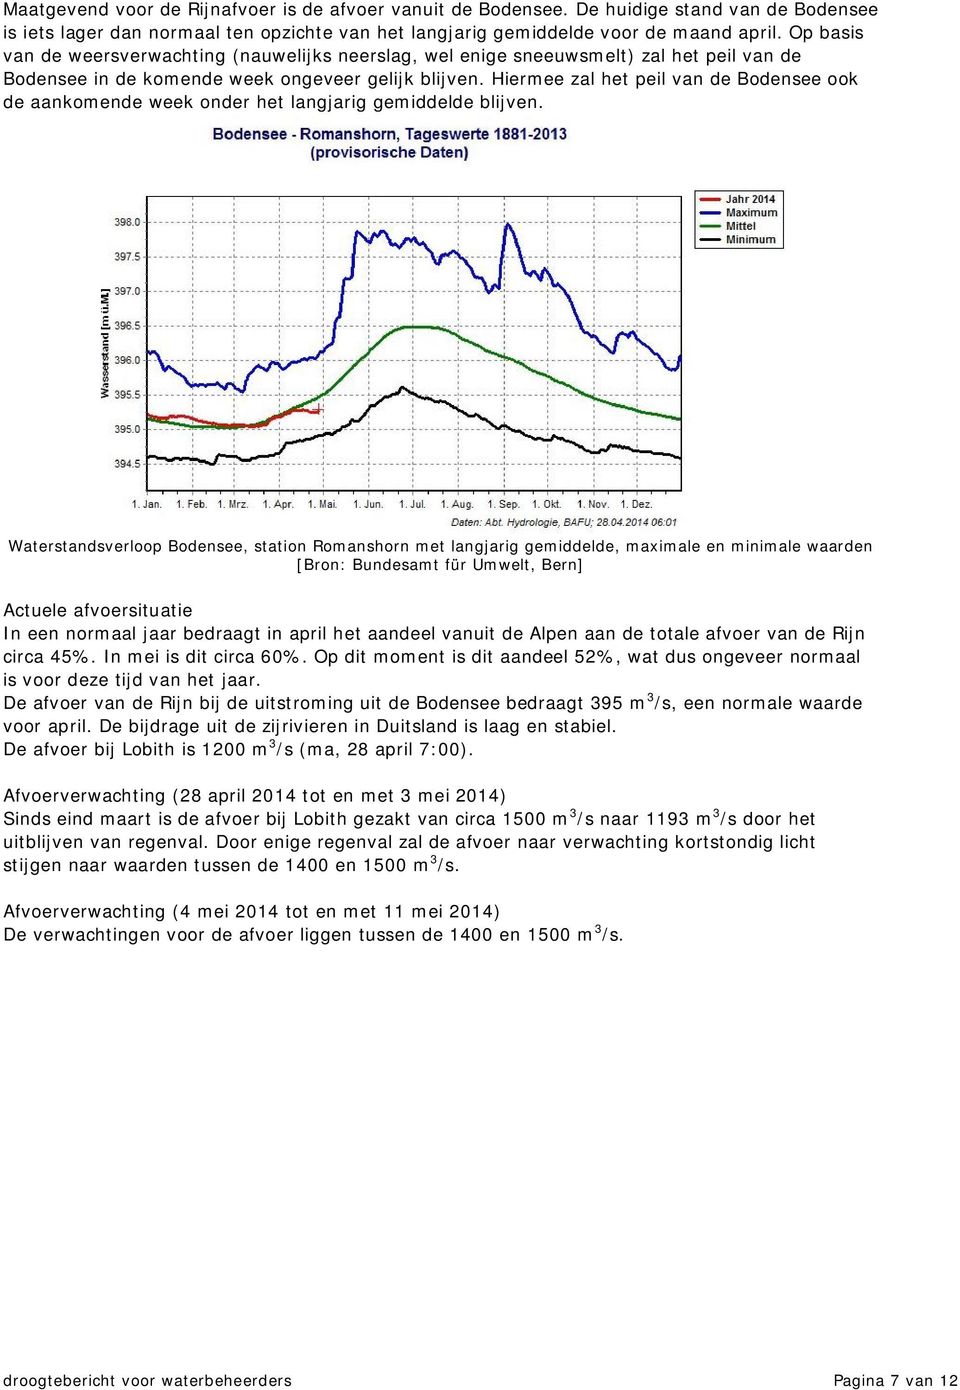 Hiermee zal het peil van de Bodensee ook de aankomende week onder het langjarig gemiddelde blijven.